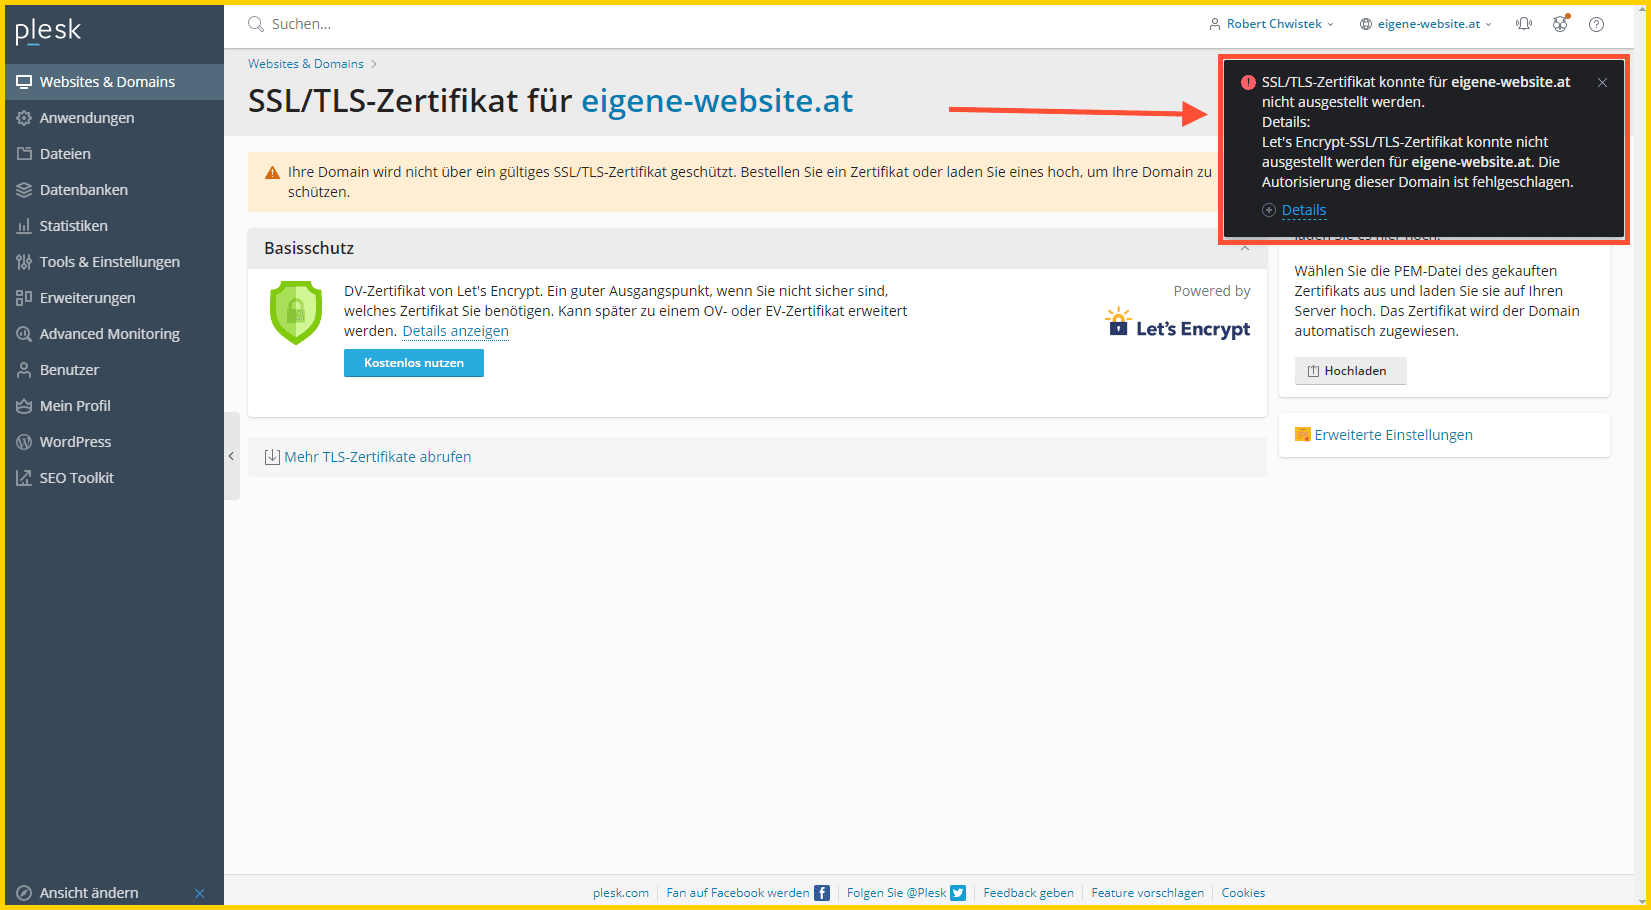 Fehler bei der Installation des SSL Zertifikats